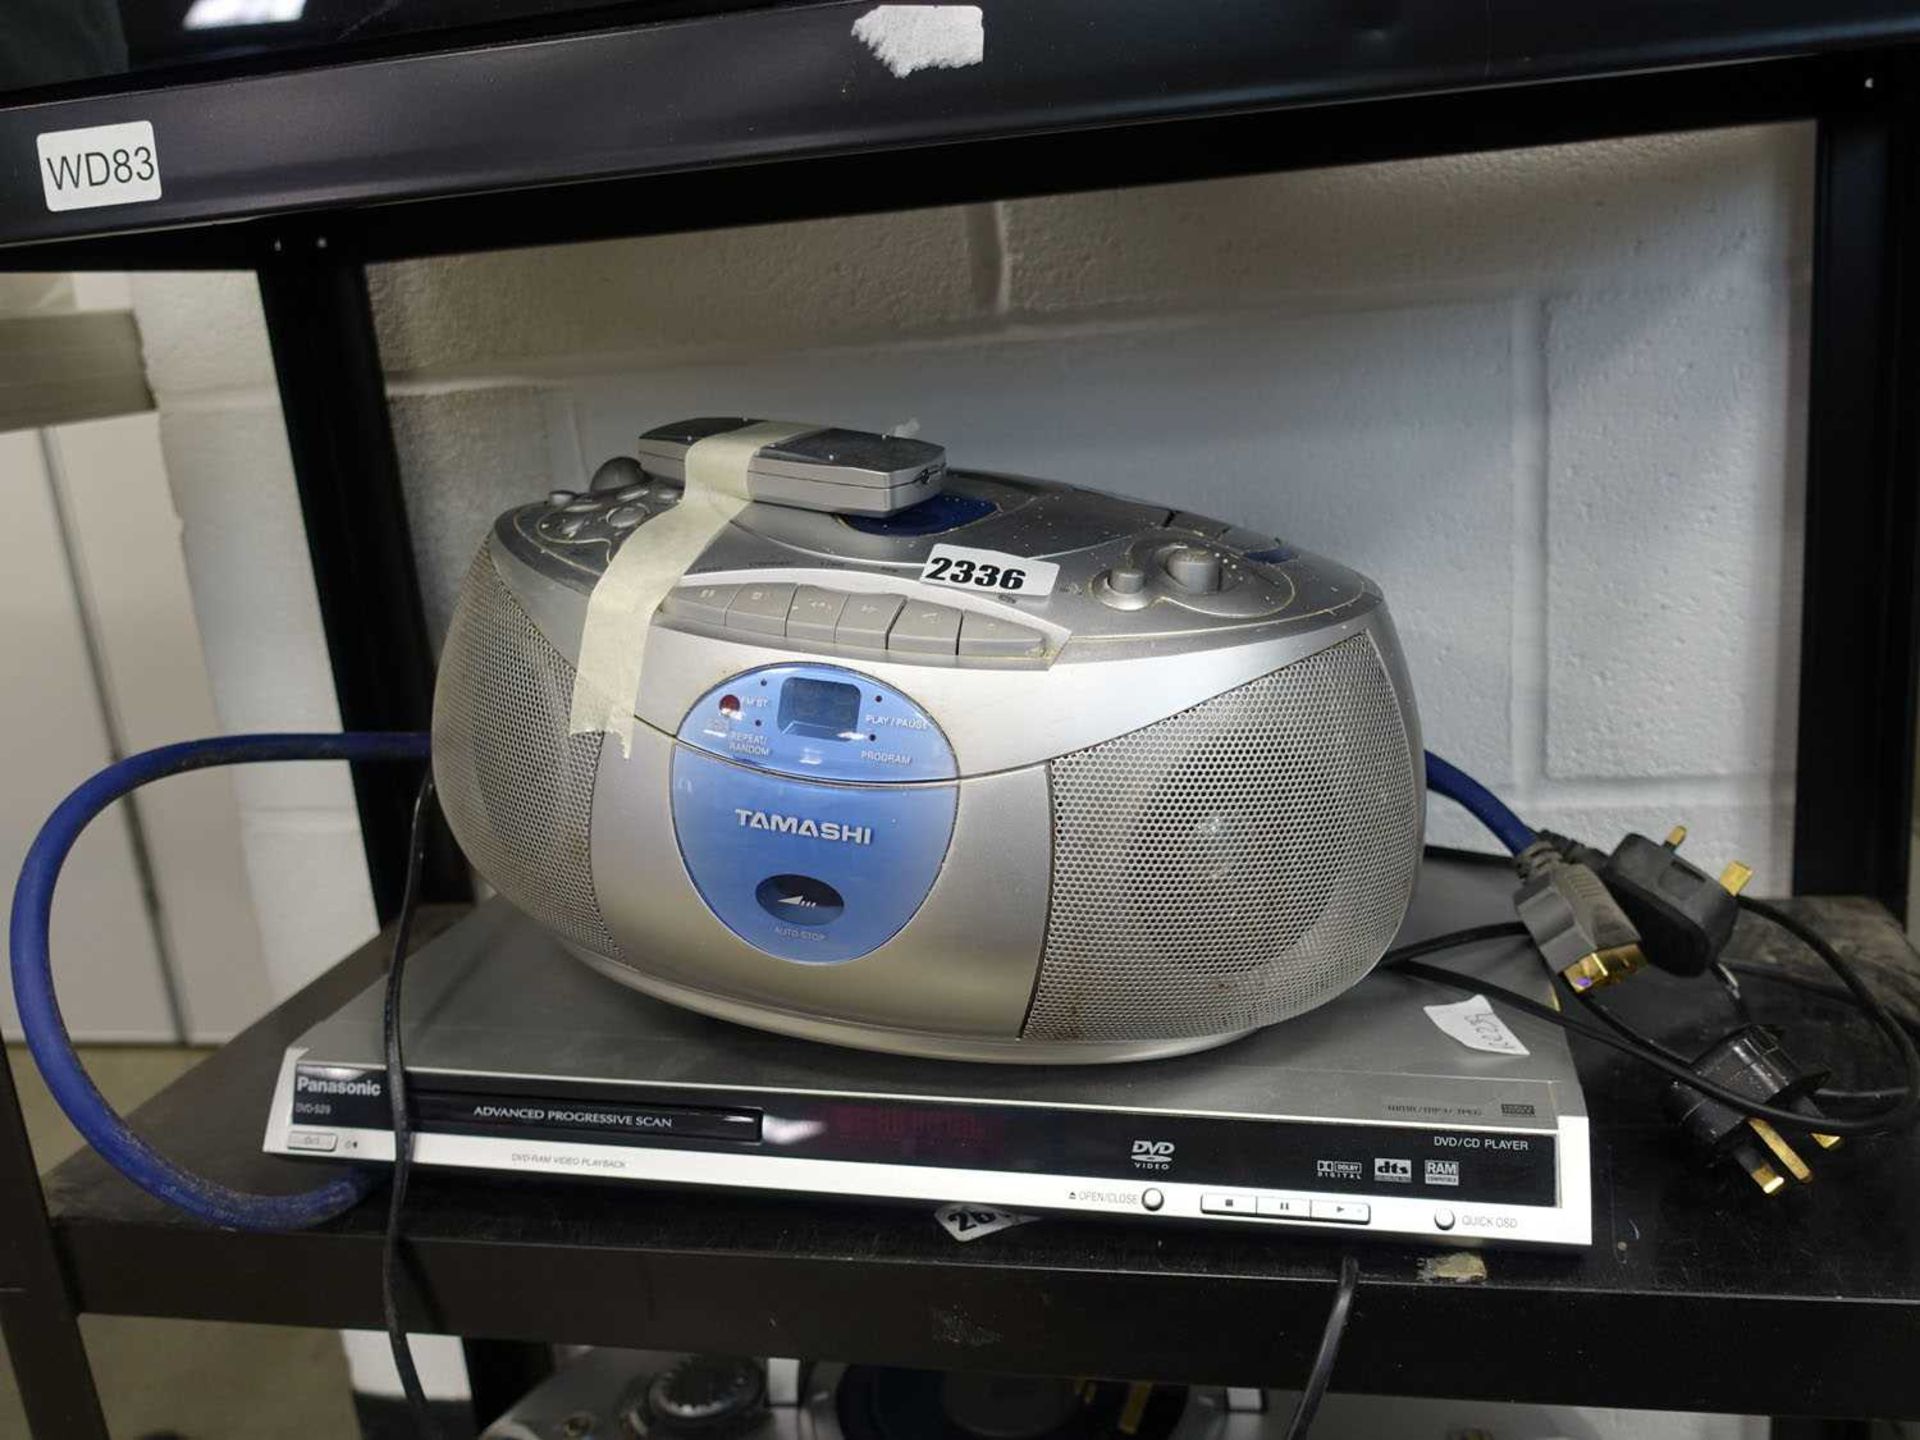 Tashimi CD player together with a Panasonic DVD player